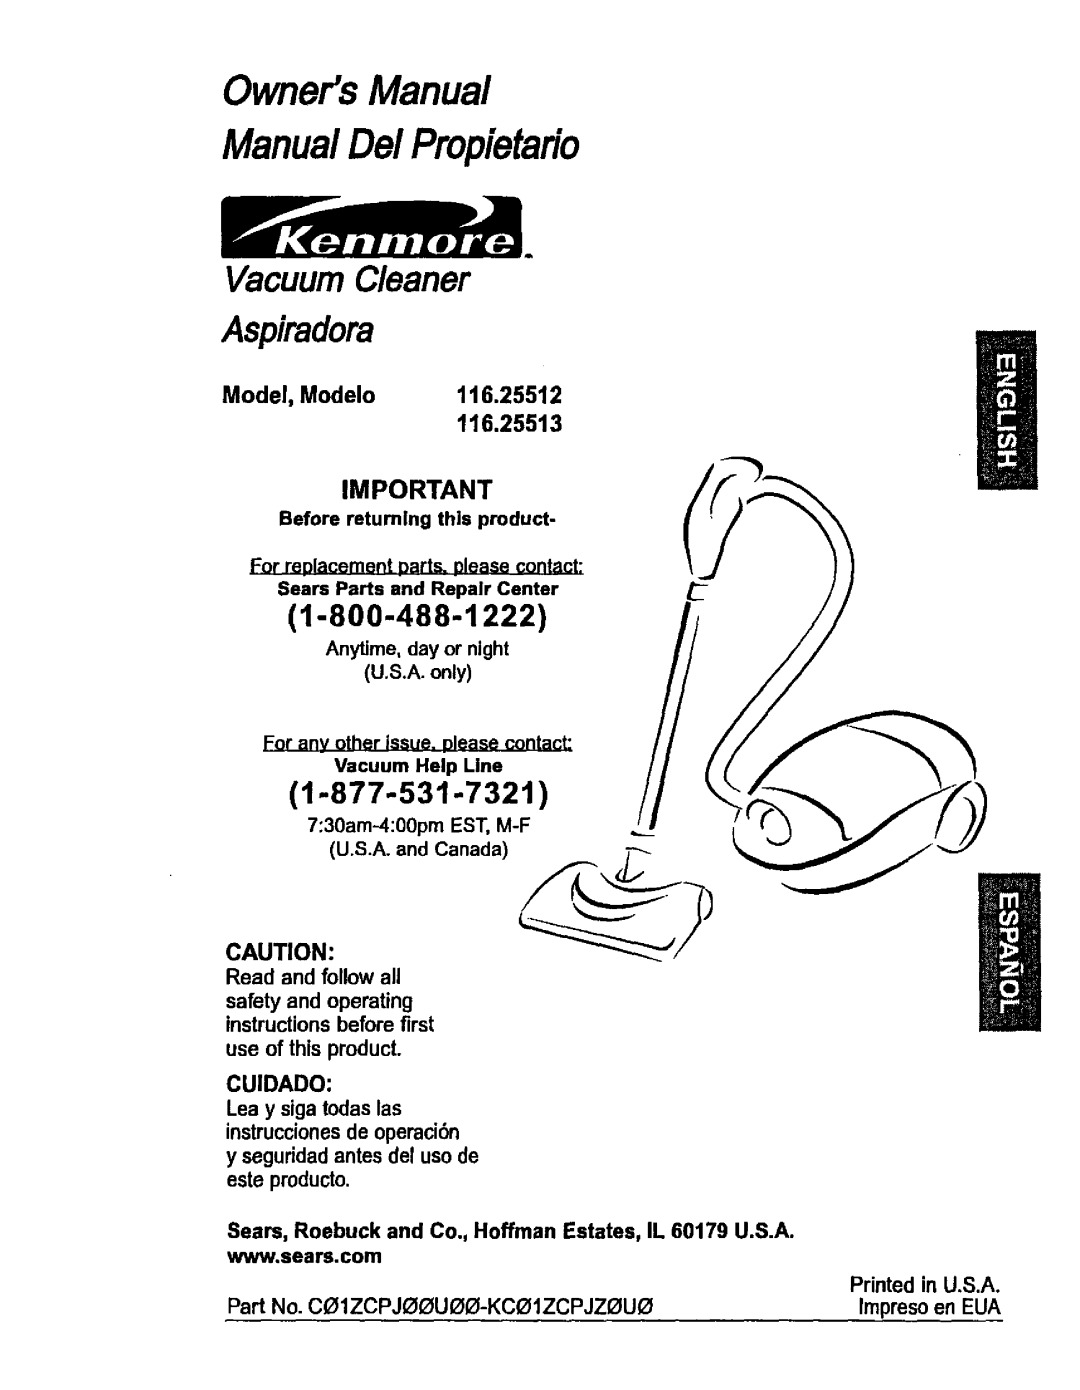 Kenmore 116.25513 owner manual 1-800-488-1222, 1-877-531-732t, Model, Modelo 116.25512, OwnersManual ManualDe/Propietafio 